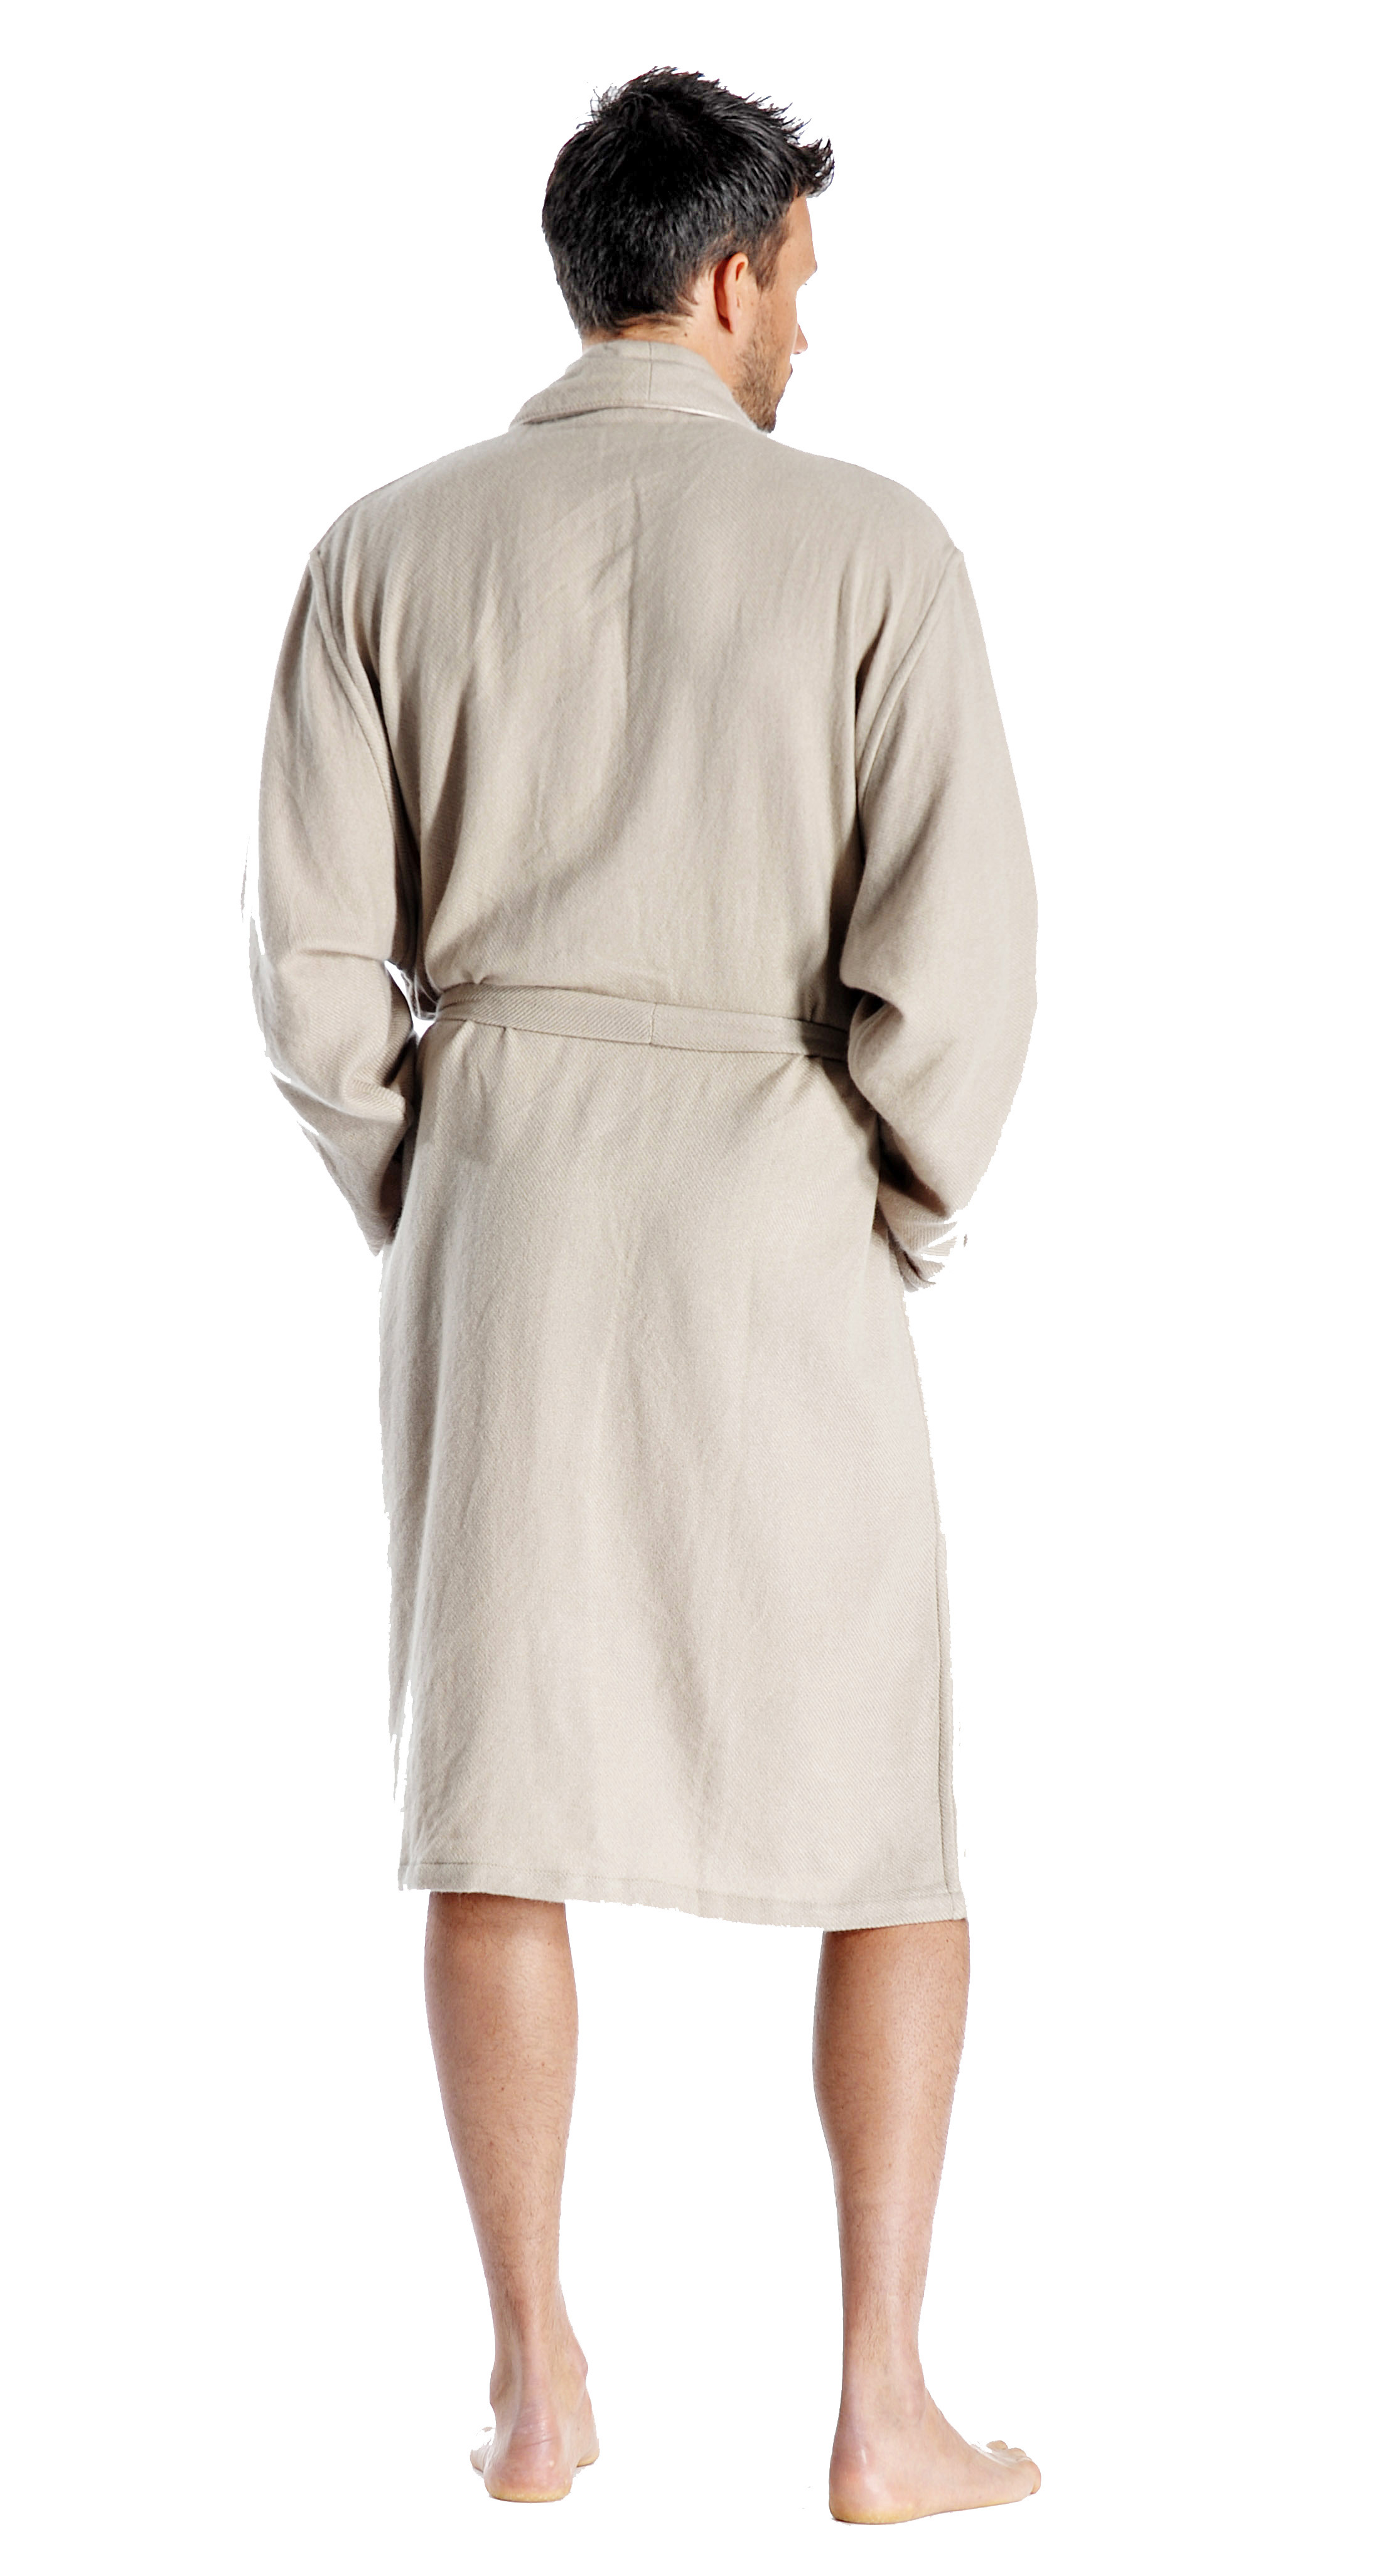 Pure Cashmere Knee Length Robe for Men (Camel, Small/Medium)